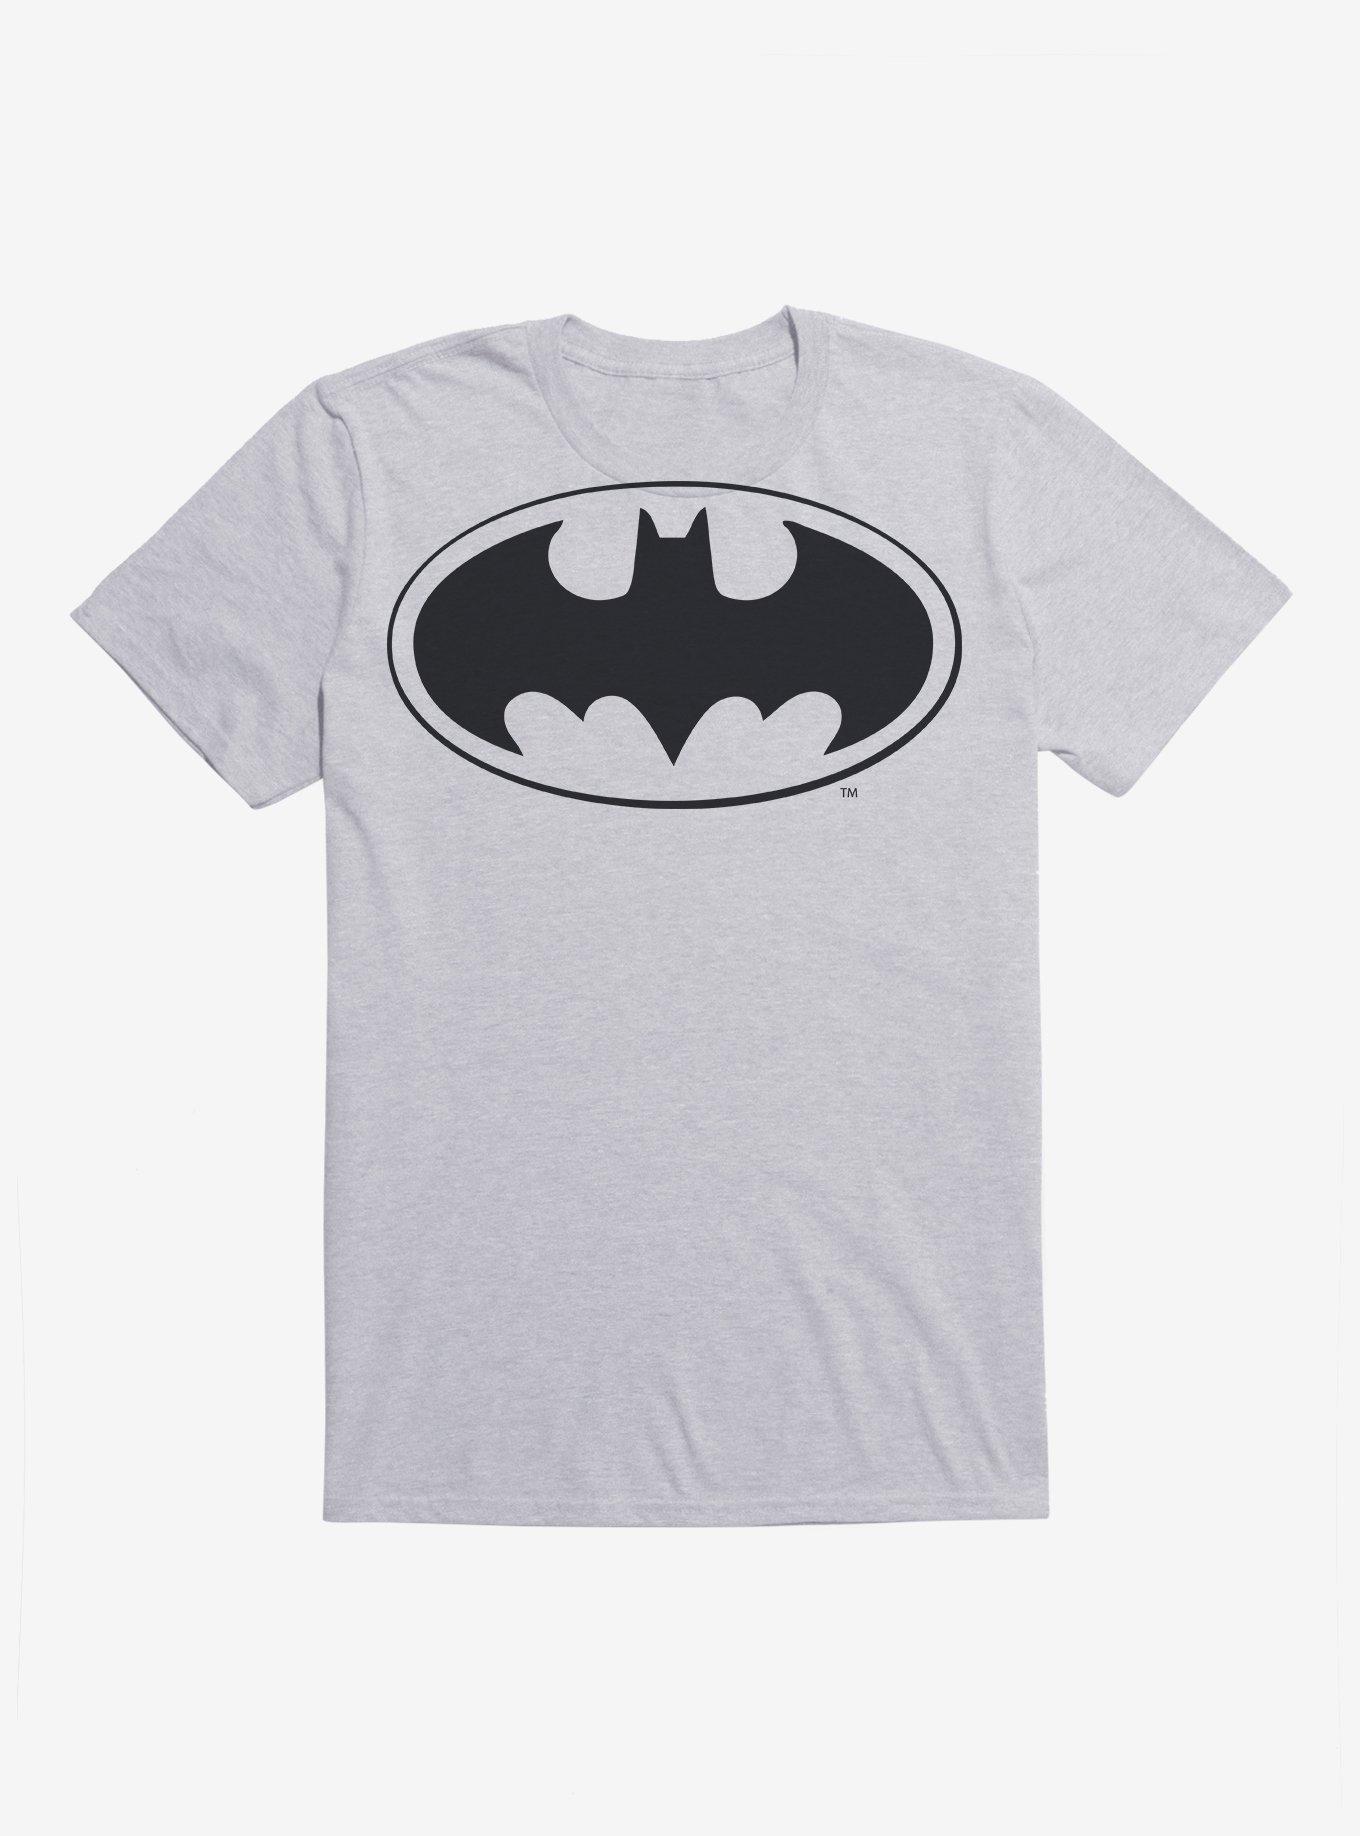 DC Comics Batman Bat Logo Black T-Shirt, , hi-res